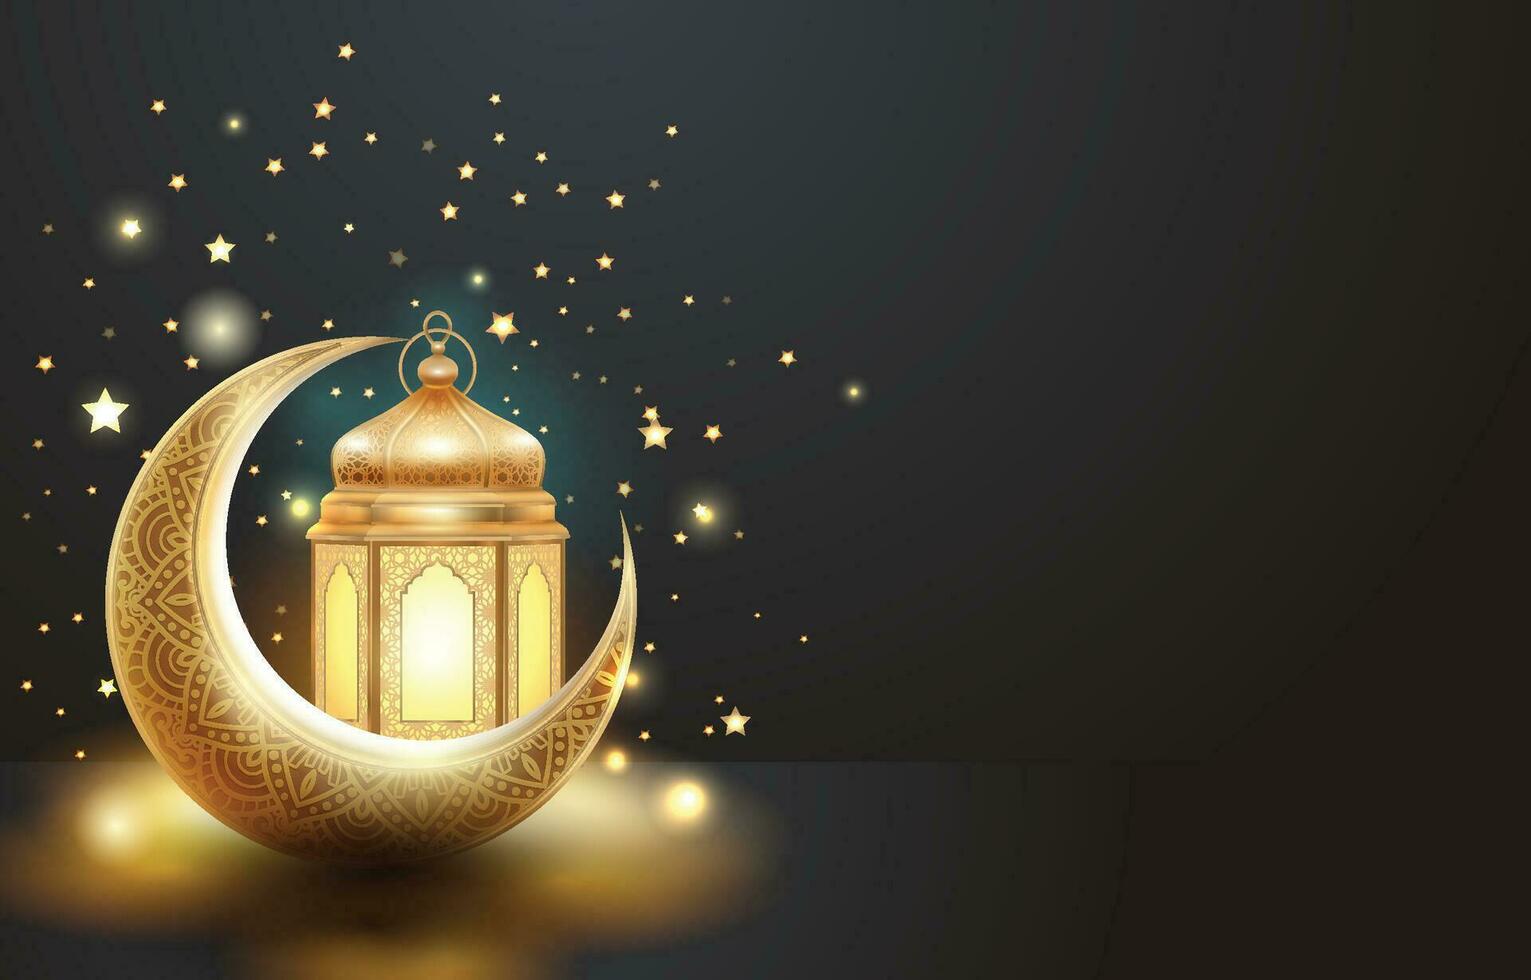 islamic bakgrund med guld lykta, halvmåne måne och stjärnor vektor